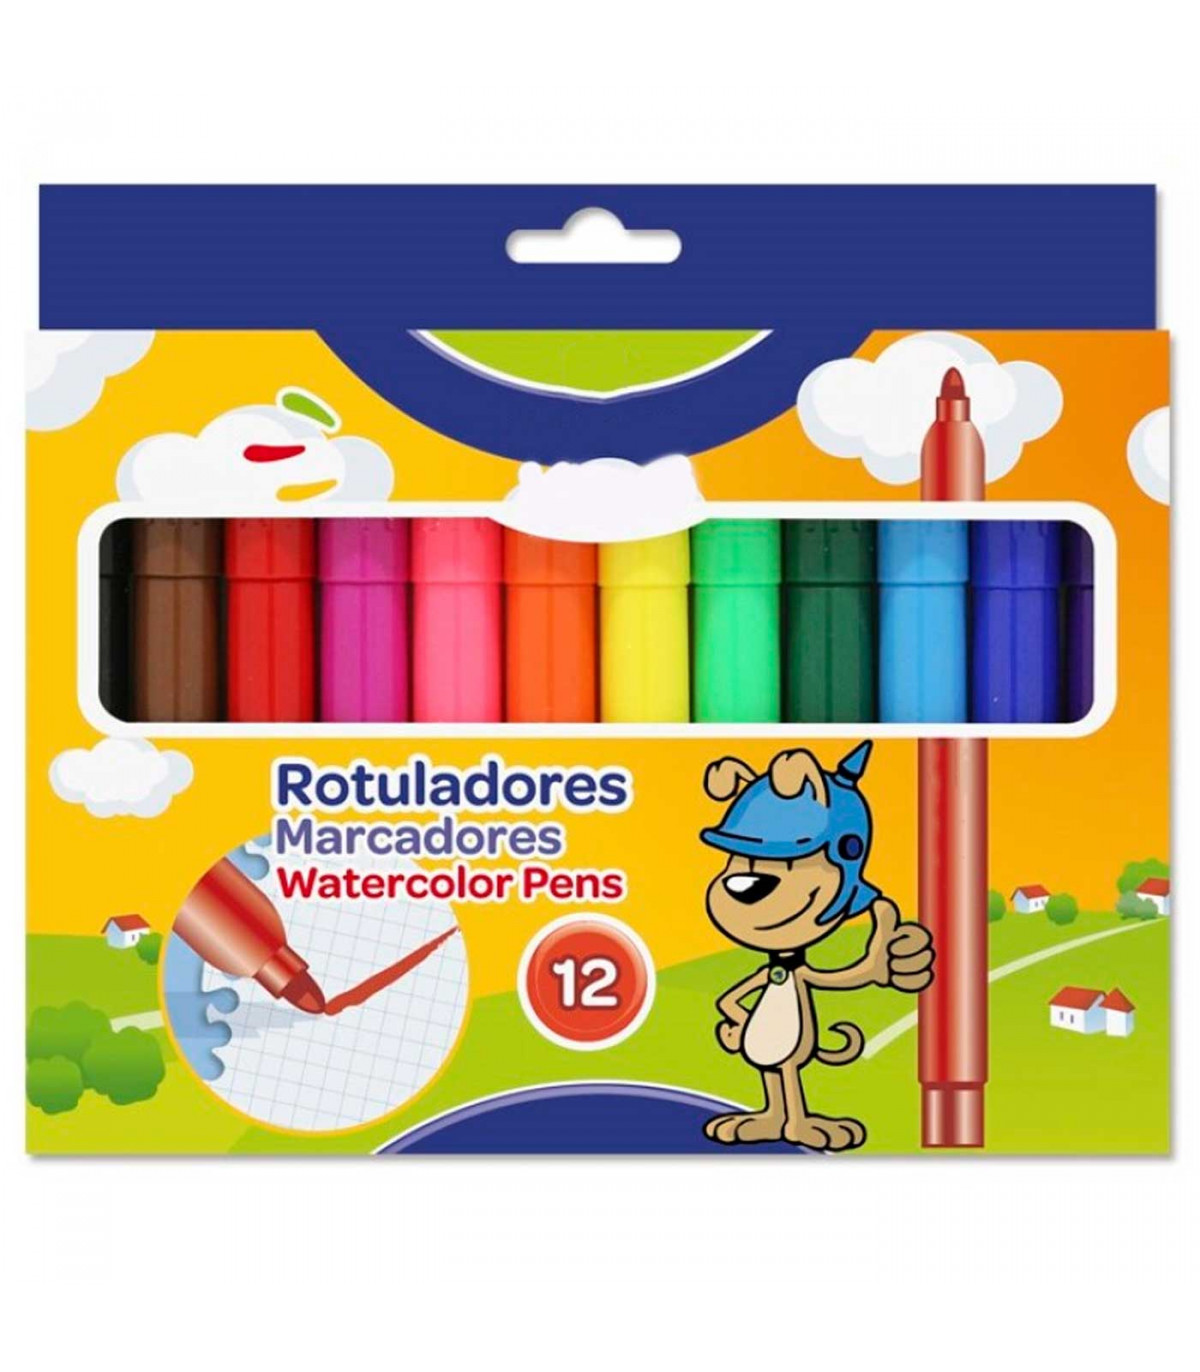 Tradineur - Caja de 12 rotuladores gruesos de colores para niños,  marcadores con punta resistente, material escolar, colores viv